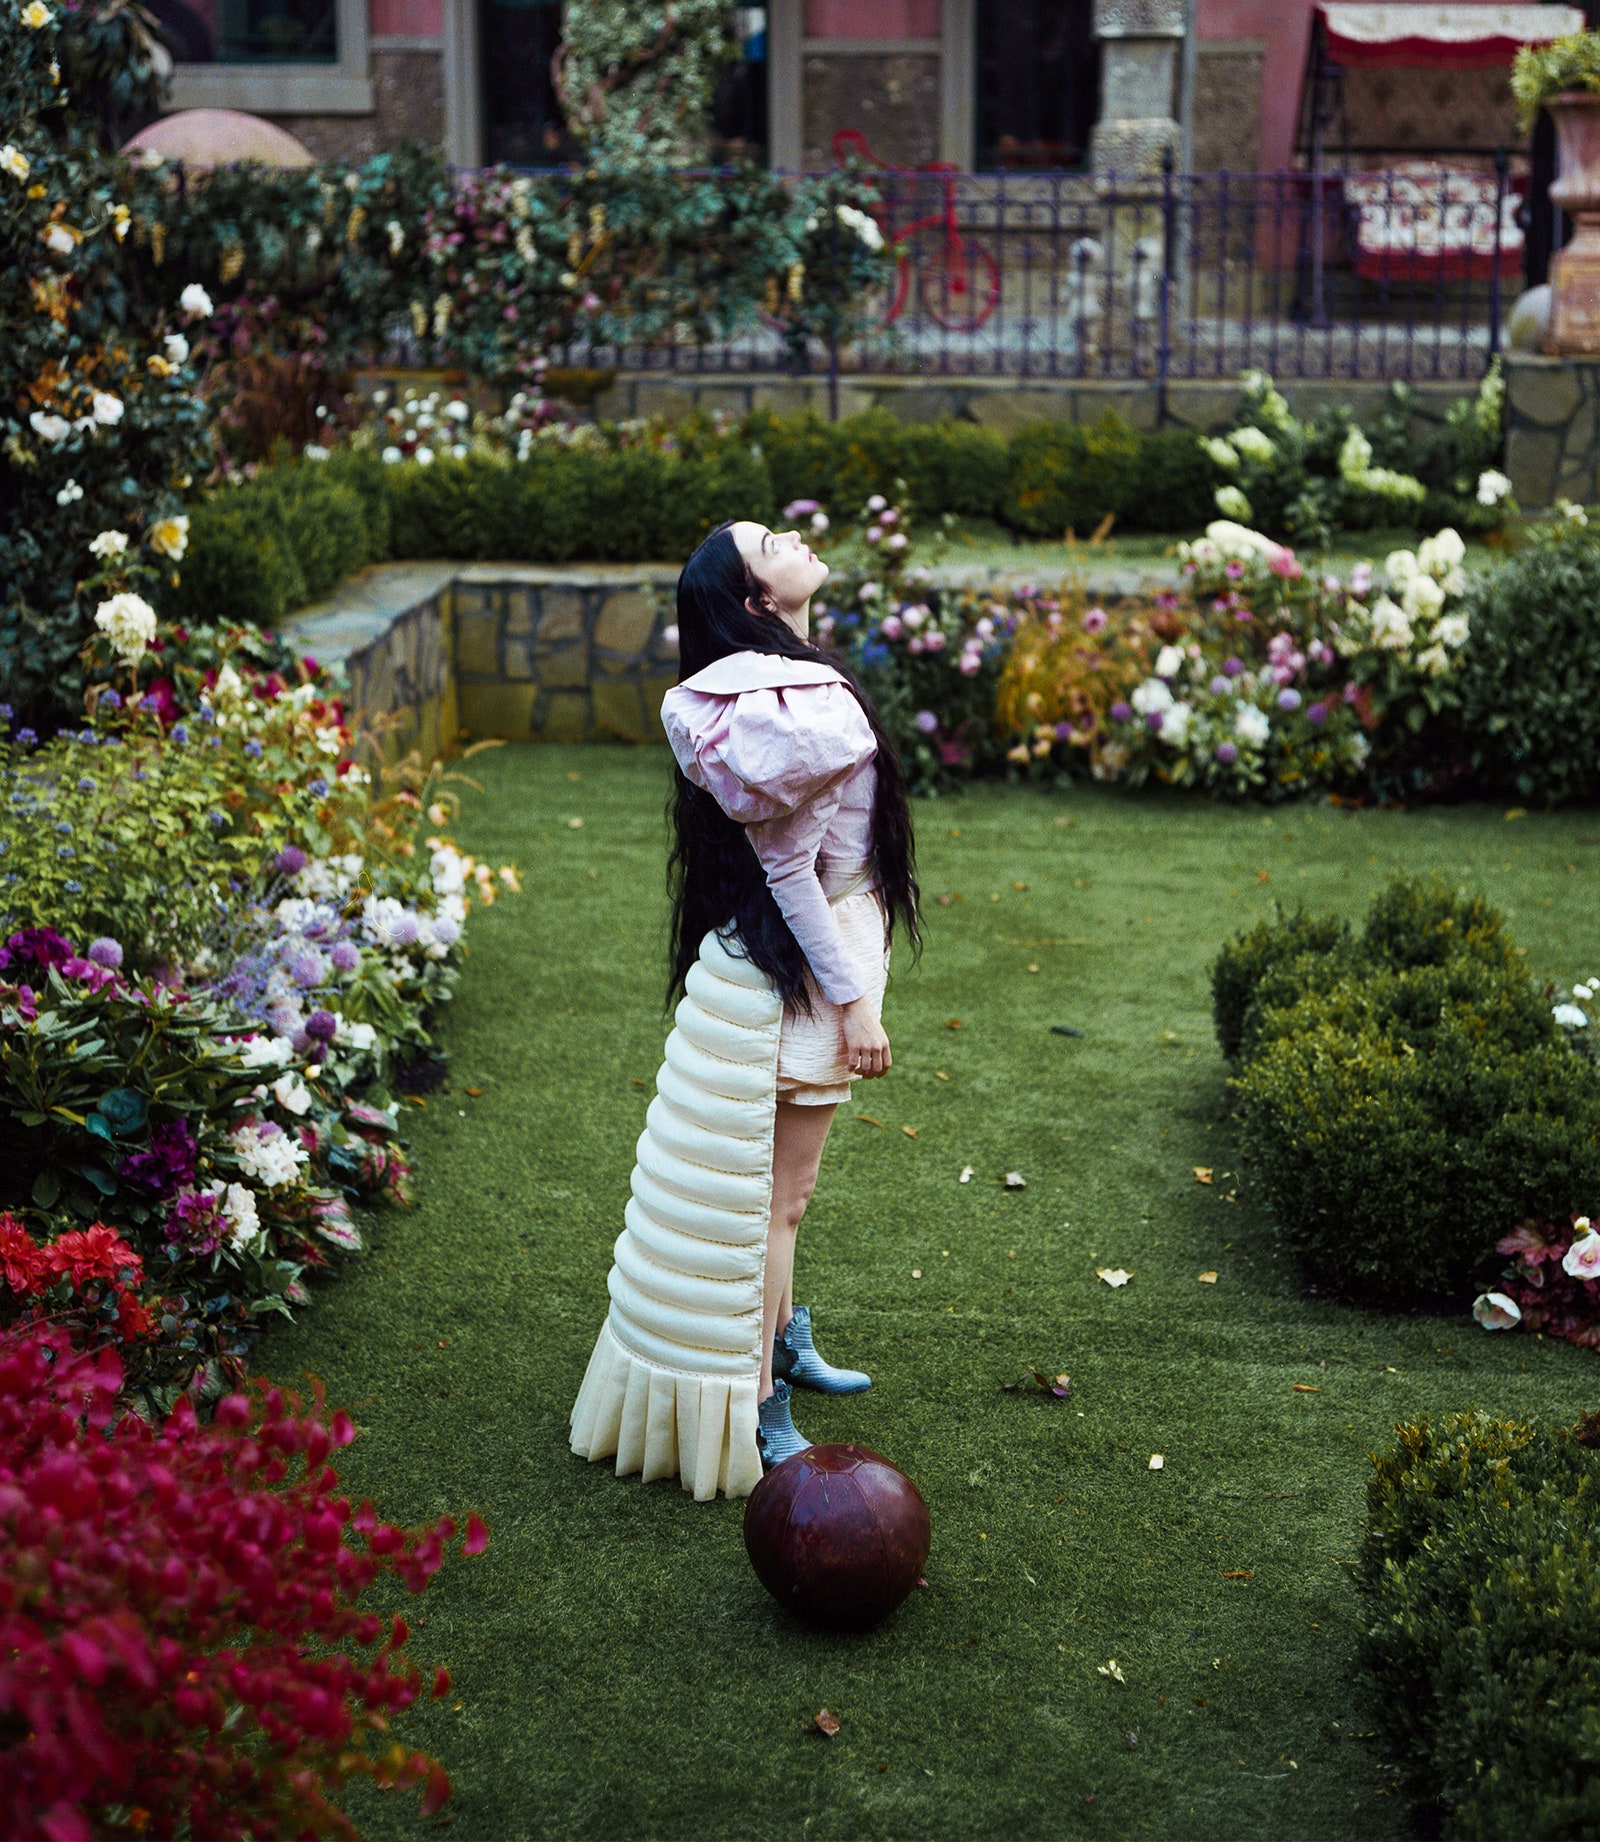 התמונה עשויה להכיל דשא צמח גן טבע בחוץ בחצר חצר בגדי שמלת אדם כדור והנעלה